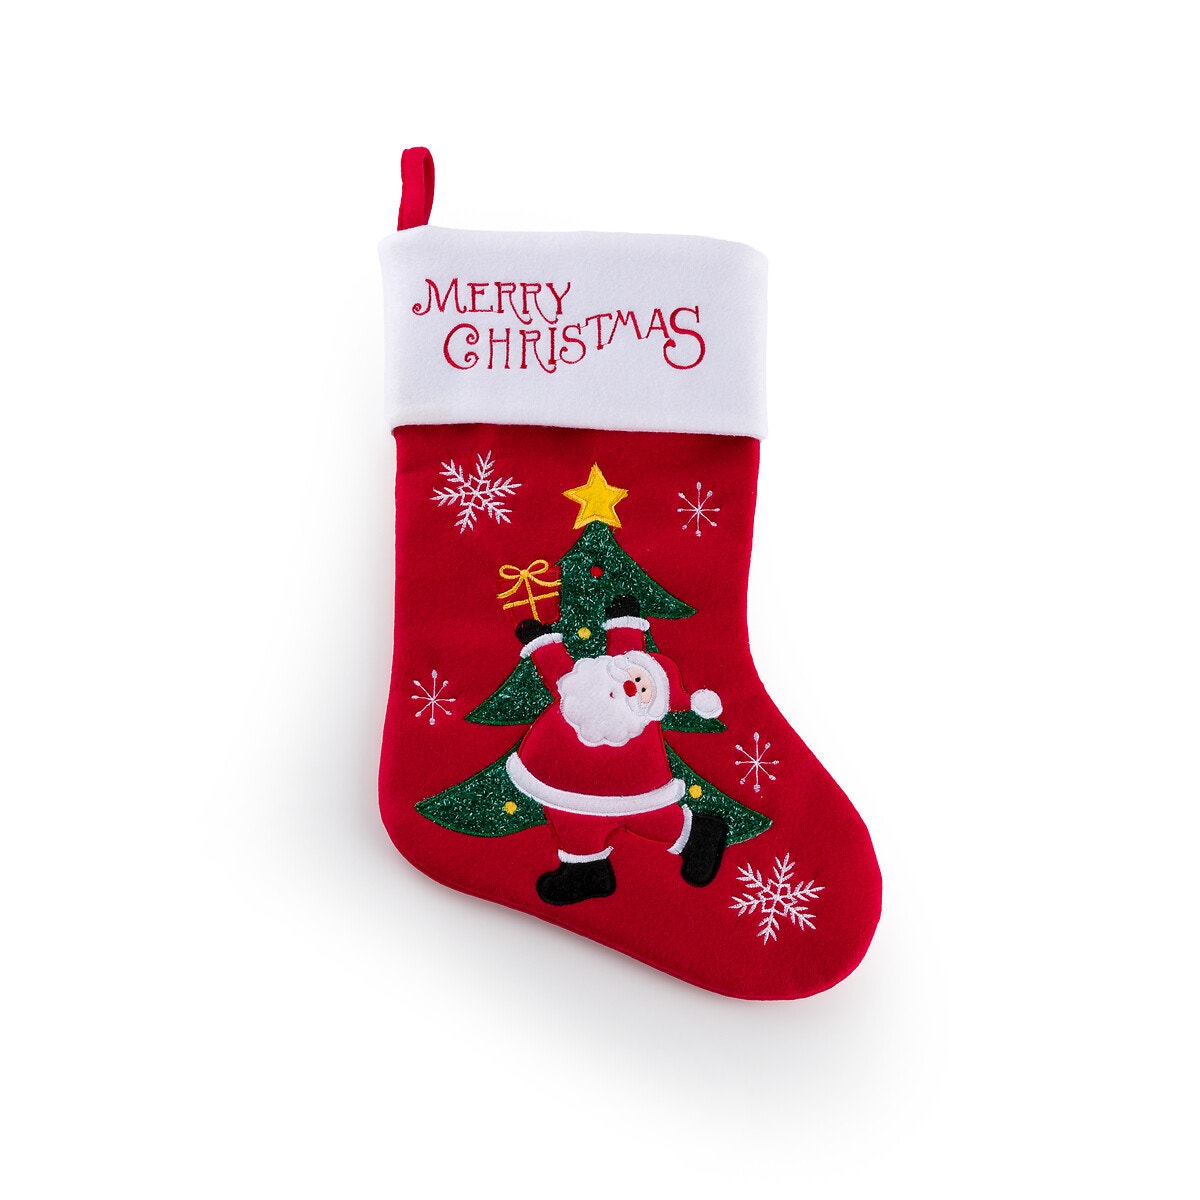 Σπίτι > Διακόσμηση > Διακοσμητικά αντικείμενα > Χριστουγεννιάτικη διακόσμηση > Χριστουγεννιάτικες διακοσμητικές κάλτσες Χριστουγεννιάτικη διακοσμητική κάλτσα